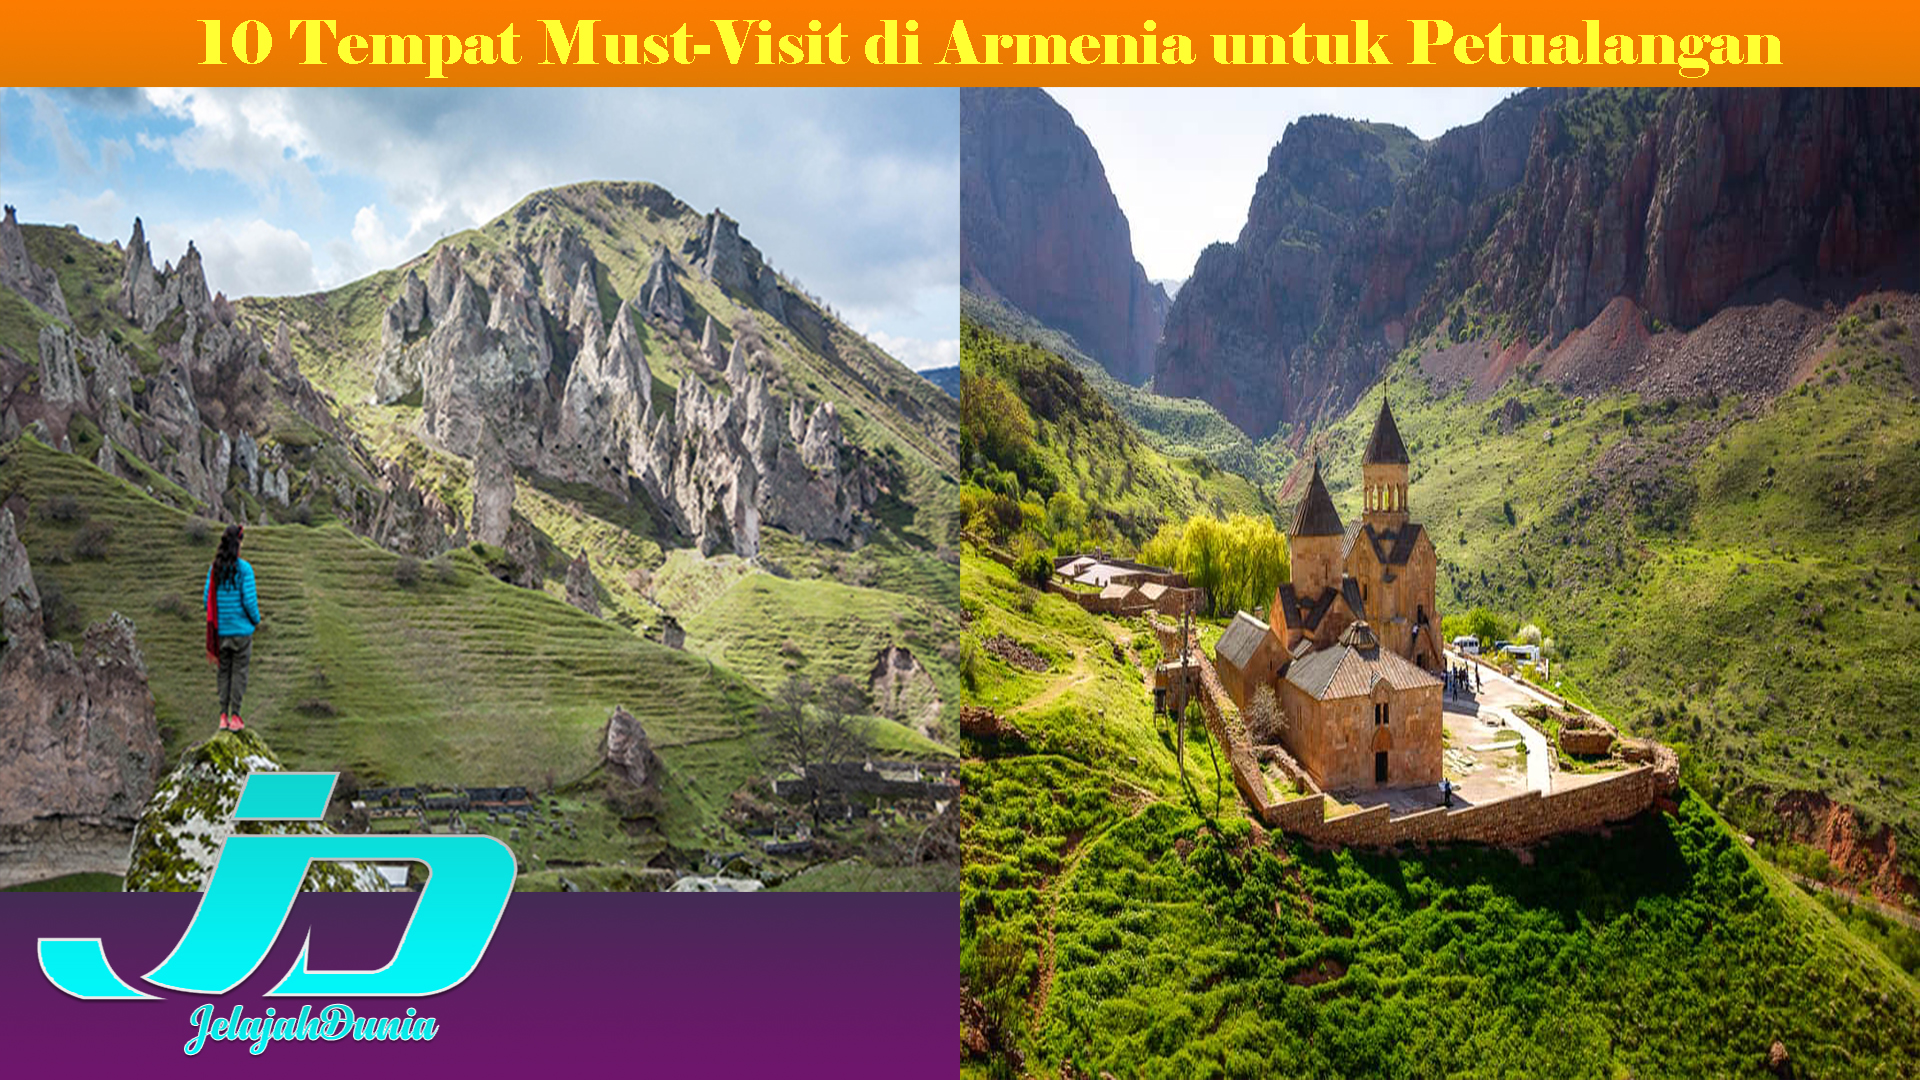 10 Tempat Must-Visit di Armenia untuk Petualangan